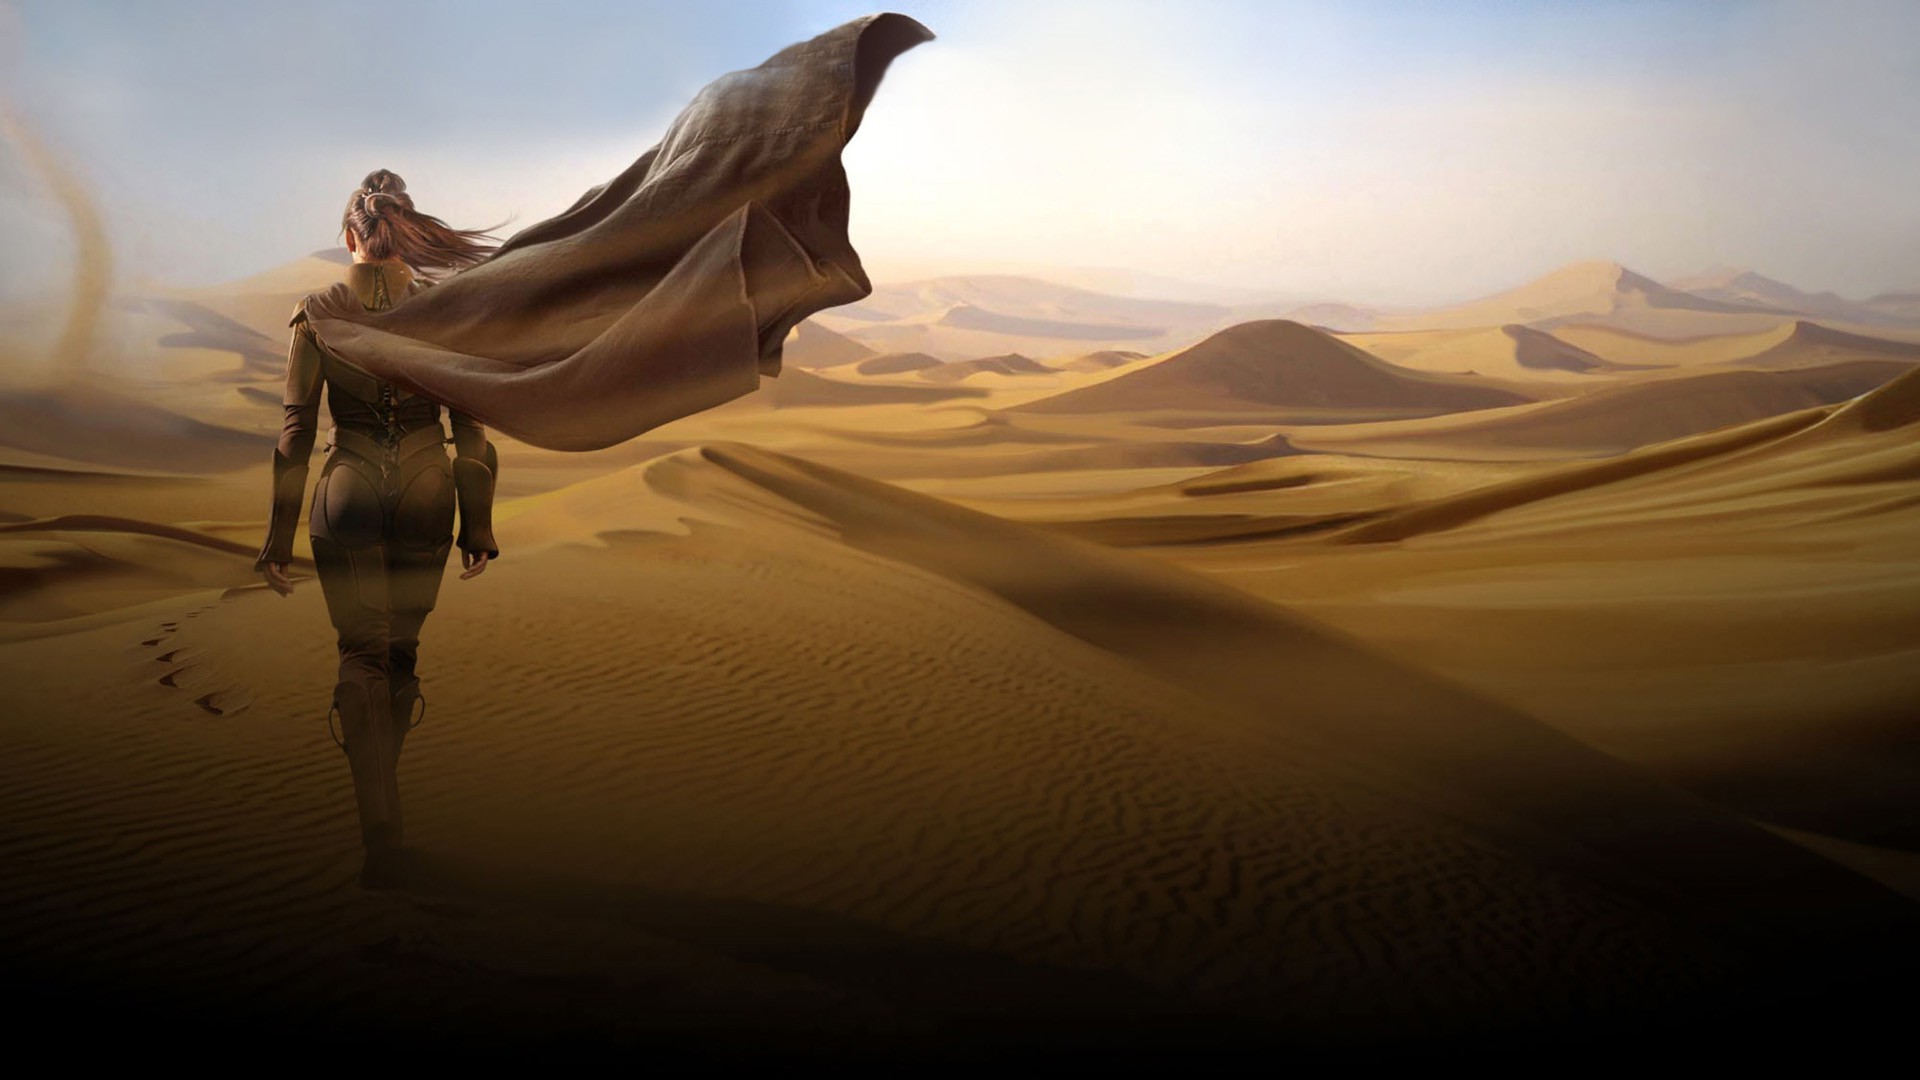 воительницы пустыня песок закат пейзаж бесплодной пляж рассвет путешествия дюна арид воды тень небо солнце приключения дневной свет океан